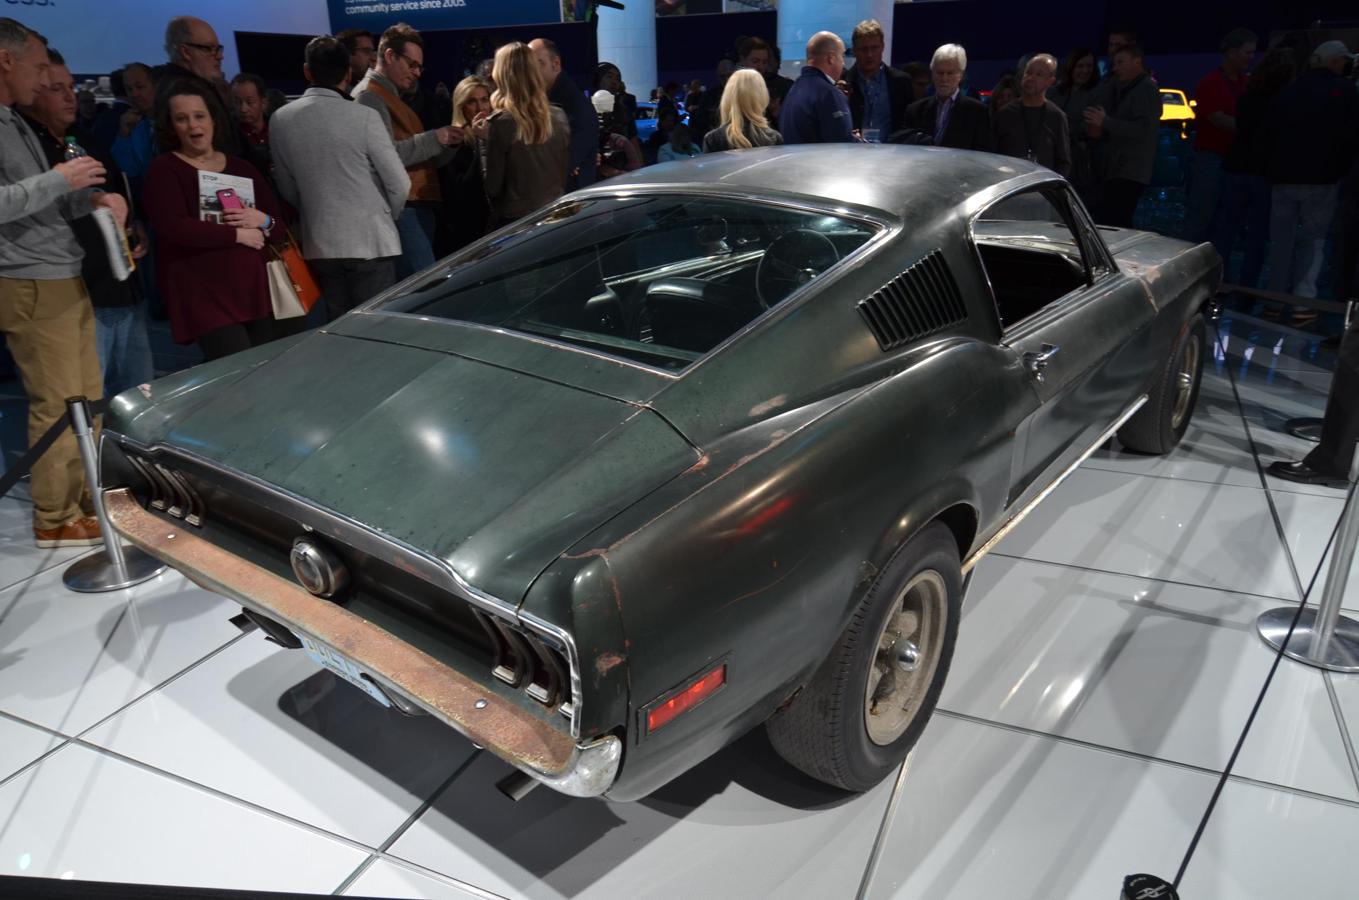 50 años han pasado desde que Steve McQueen condujera este magnífico Mustang Bullit en que se inspira la versión 2018 presentada en el NAIAS.